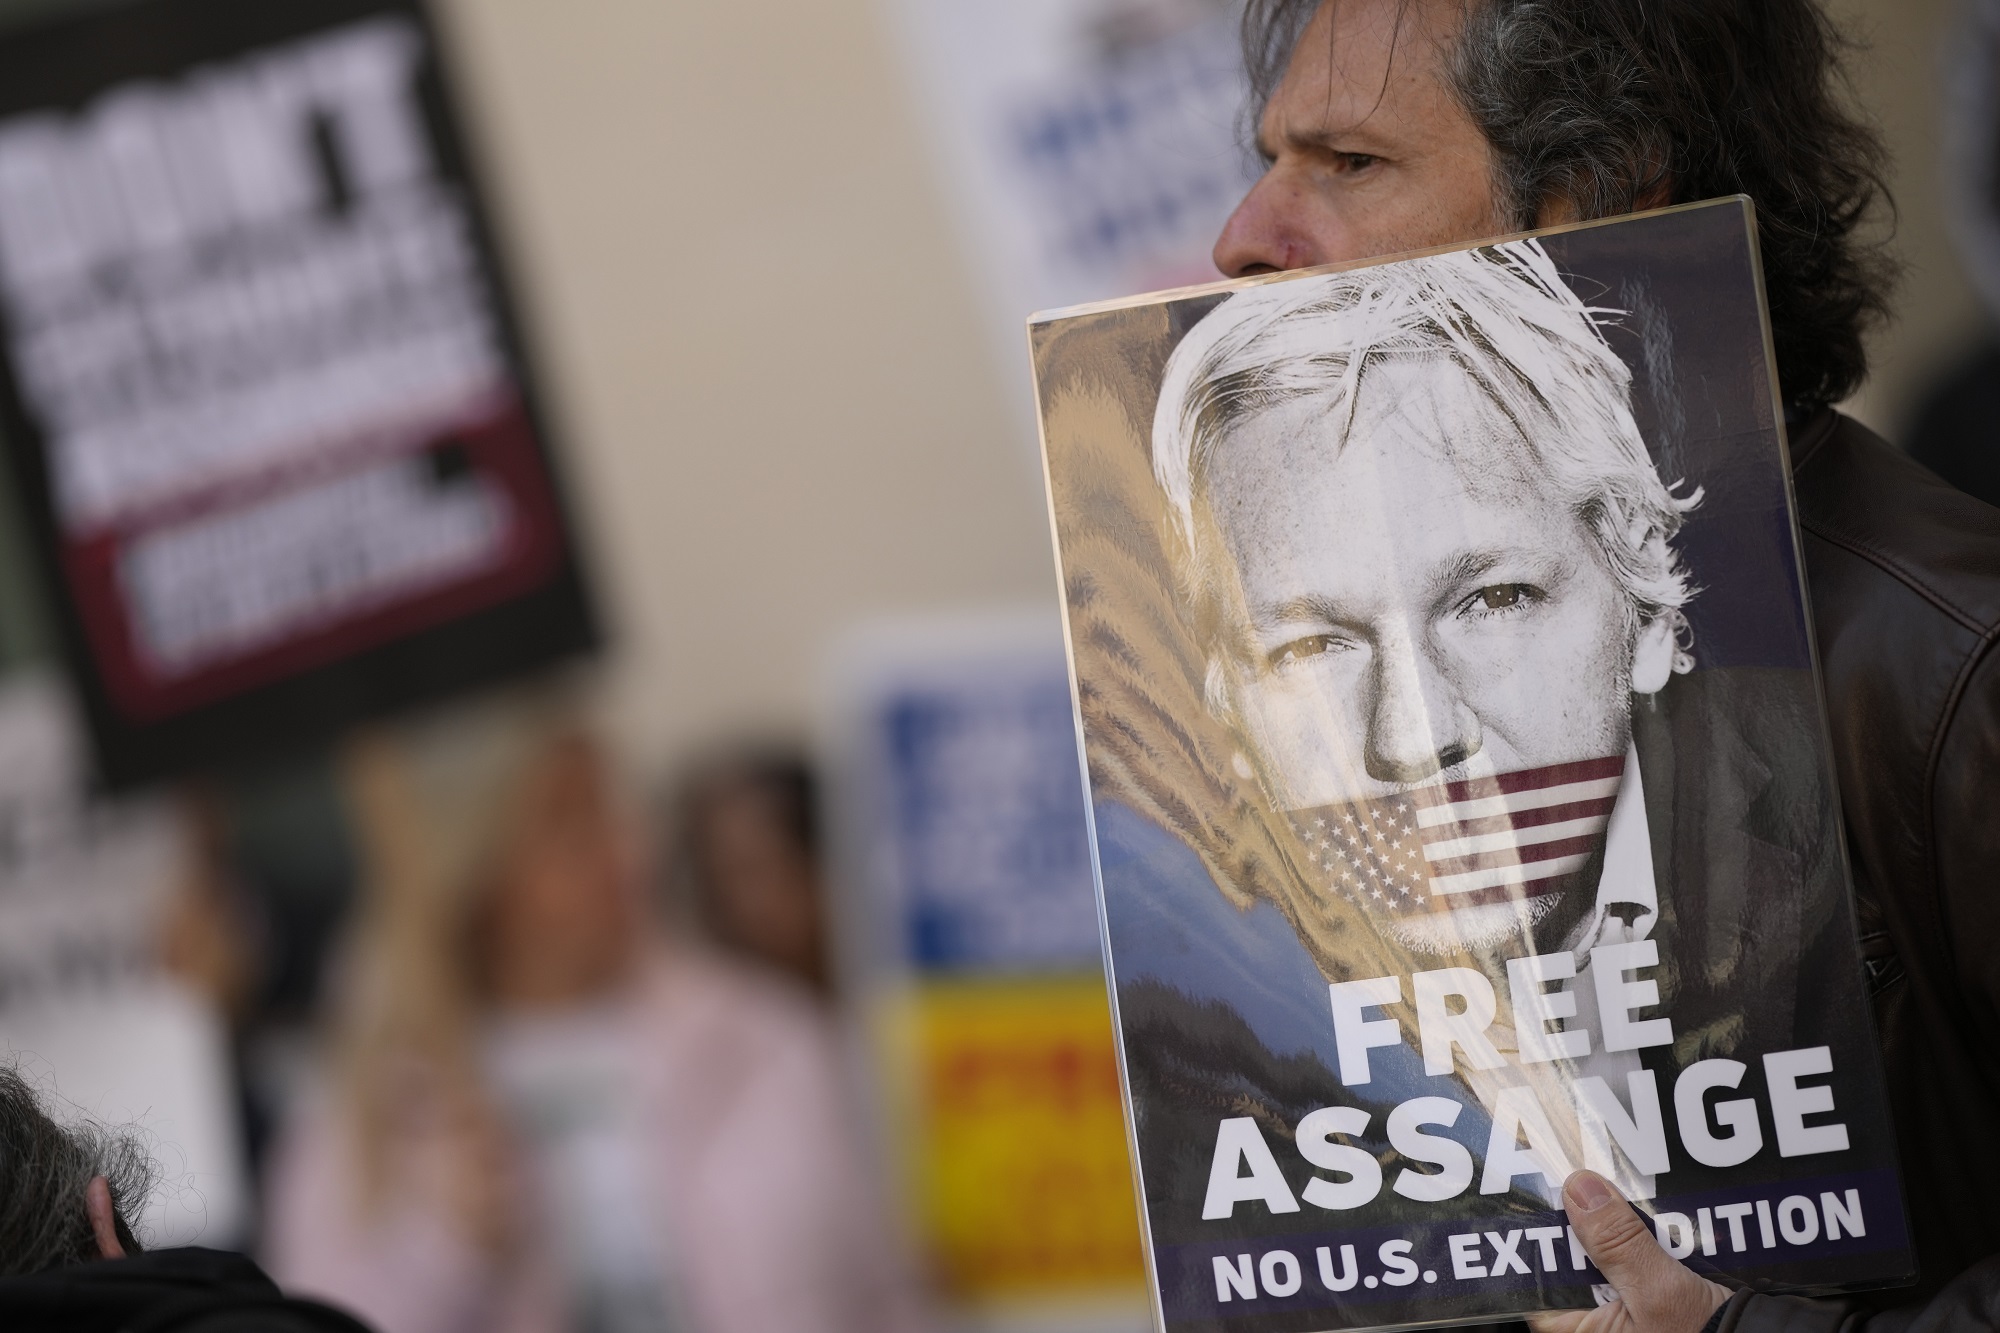 Υπόθεση Ασάνζ: Κορυφαία μέσα ενημέρωσης προτρέπουν τις ΗΠΑ να τερματίσουν τη δίωξή του